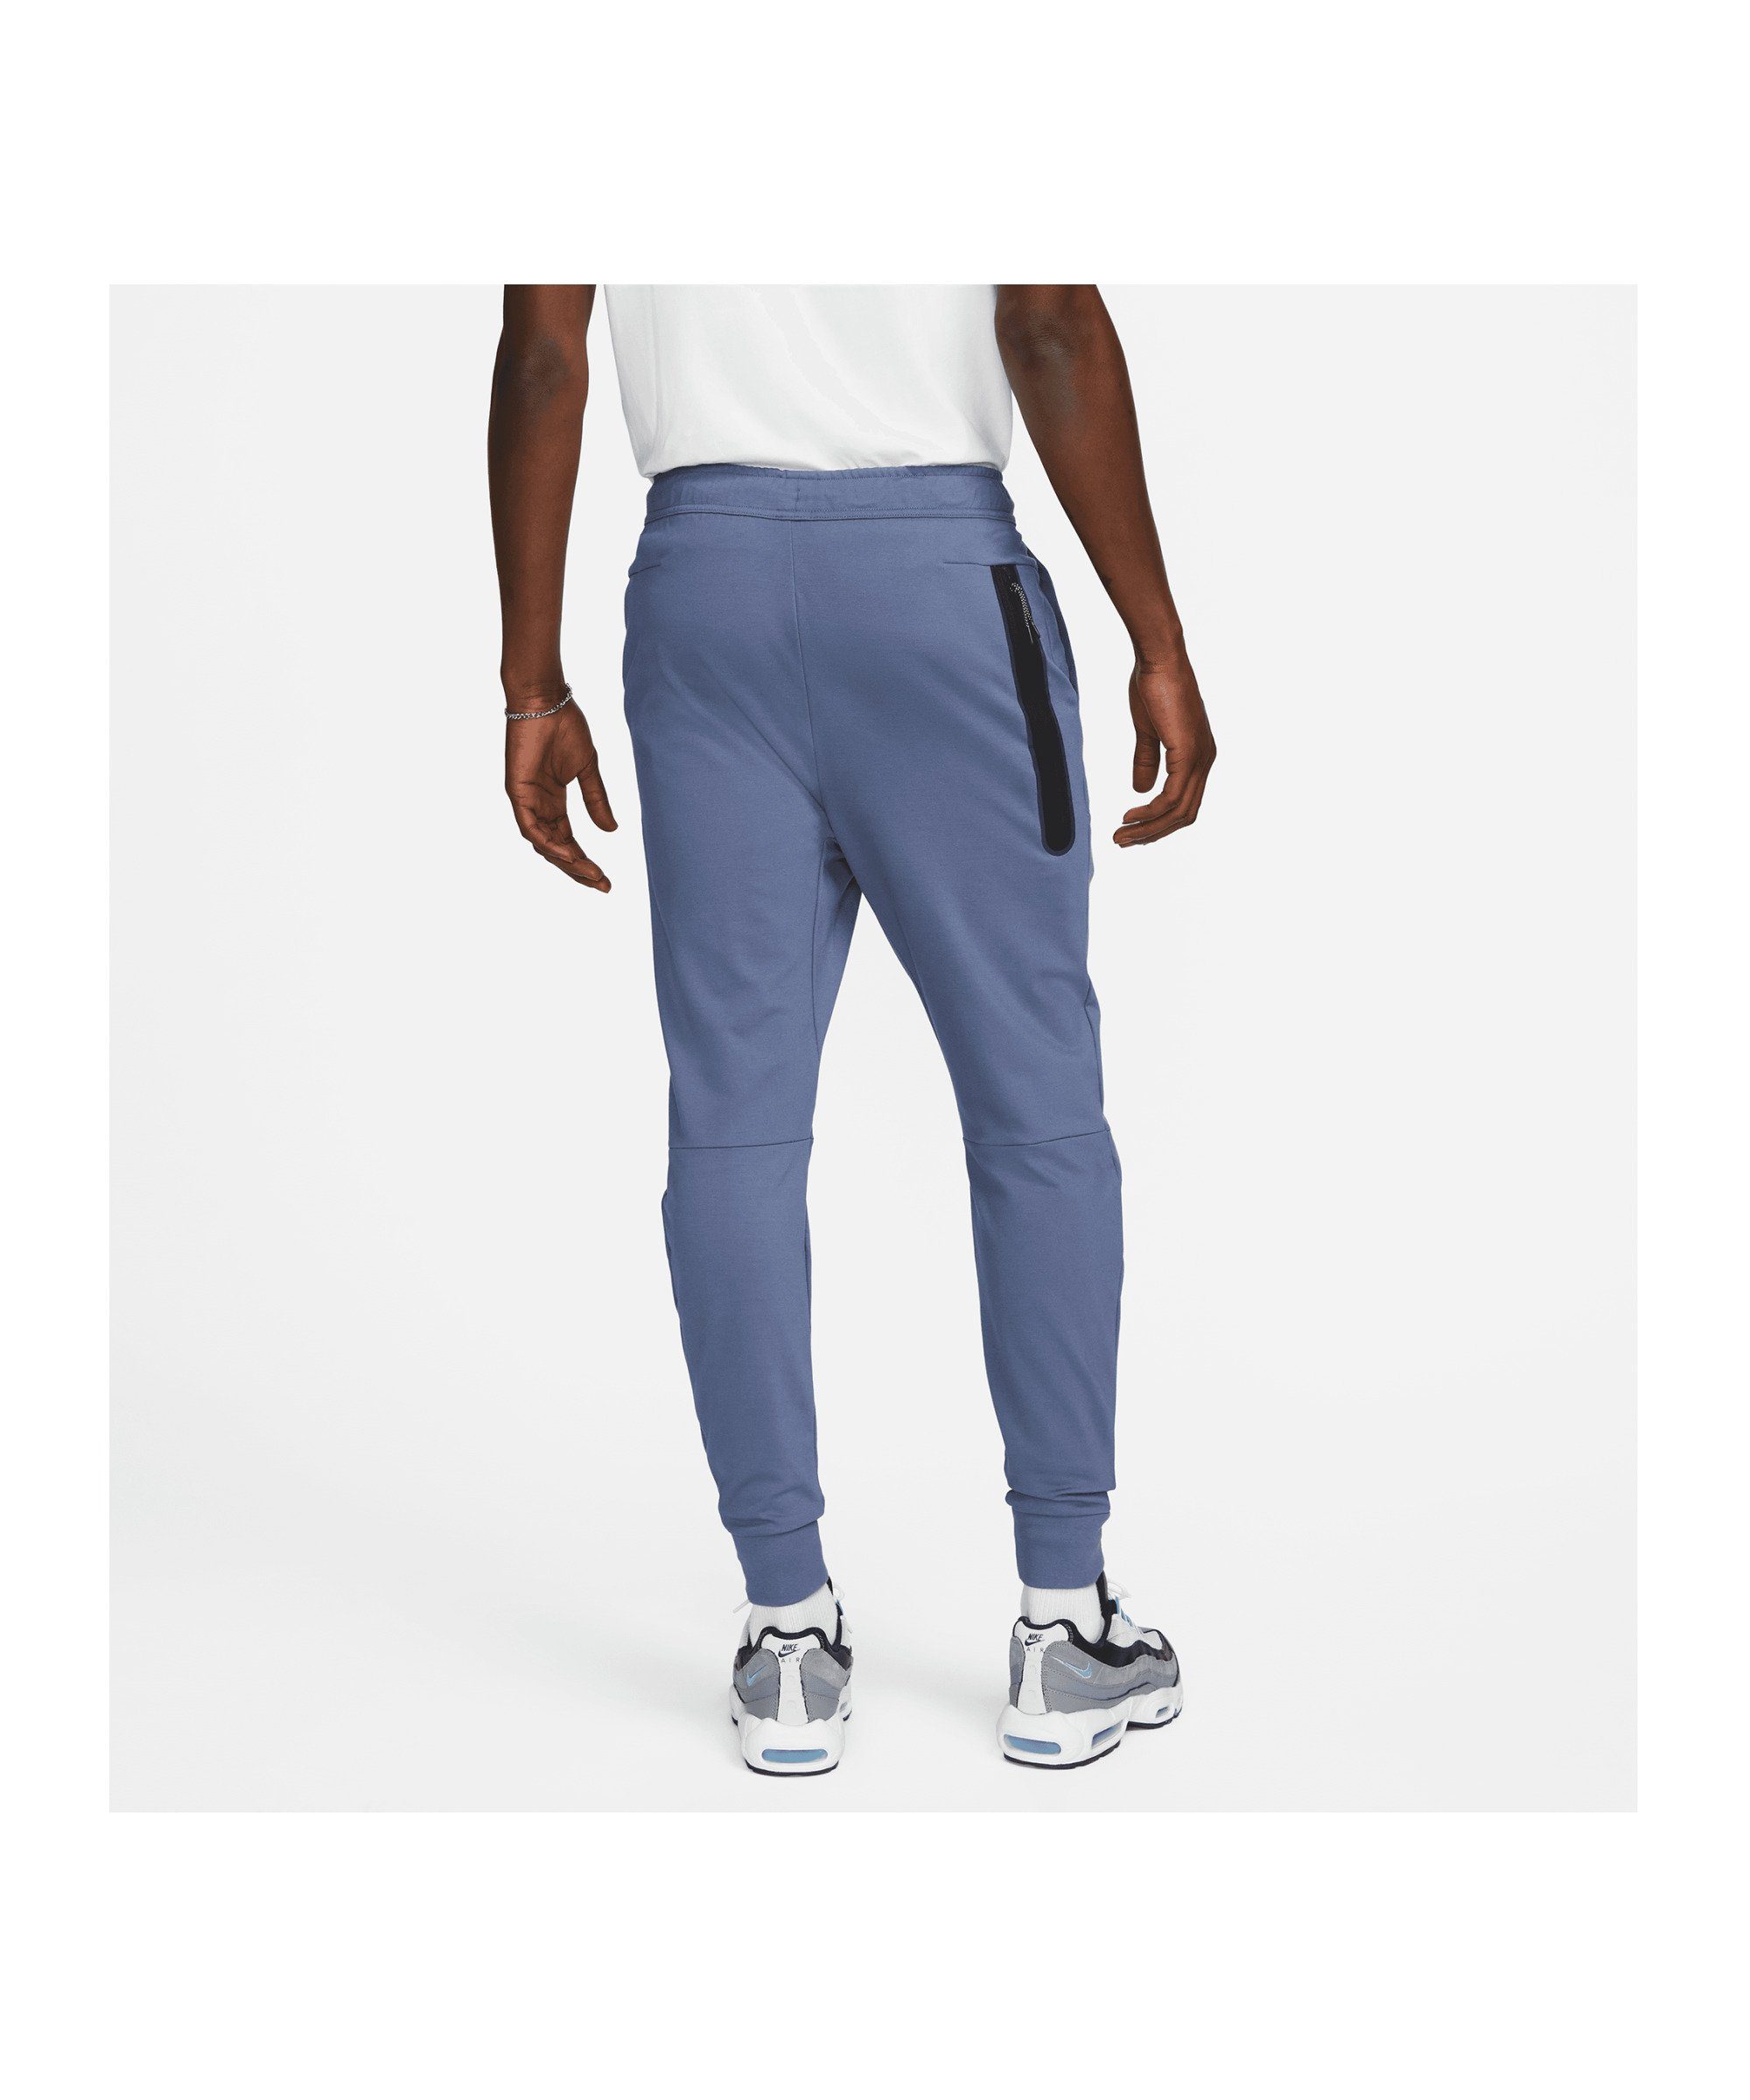 Jogginghose Jogginghose Tech Essentials blau Sportswear Nike